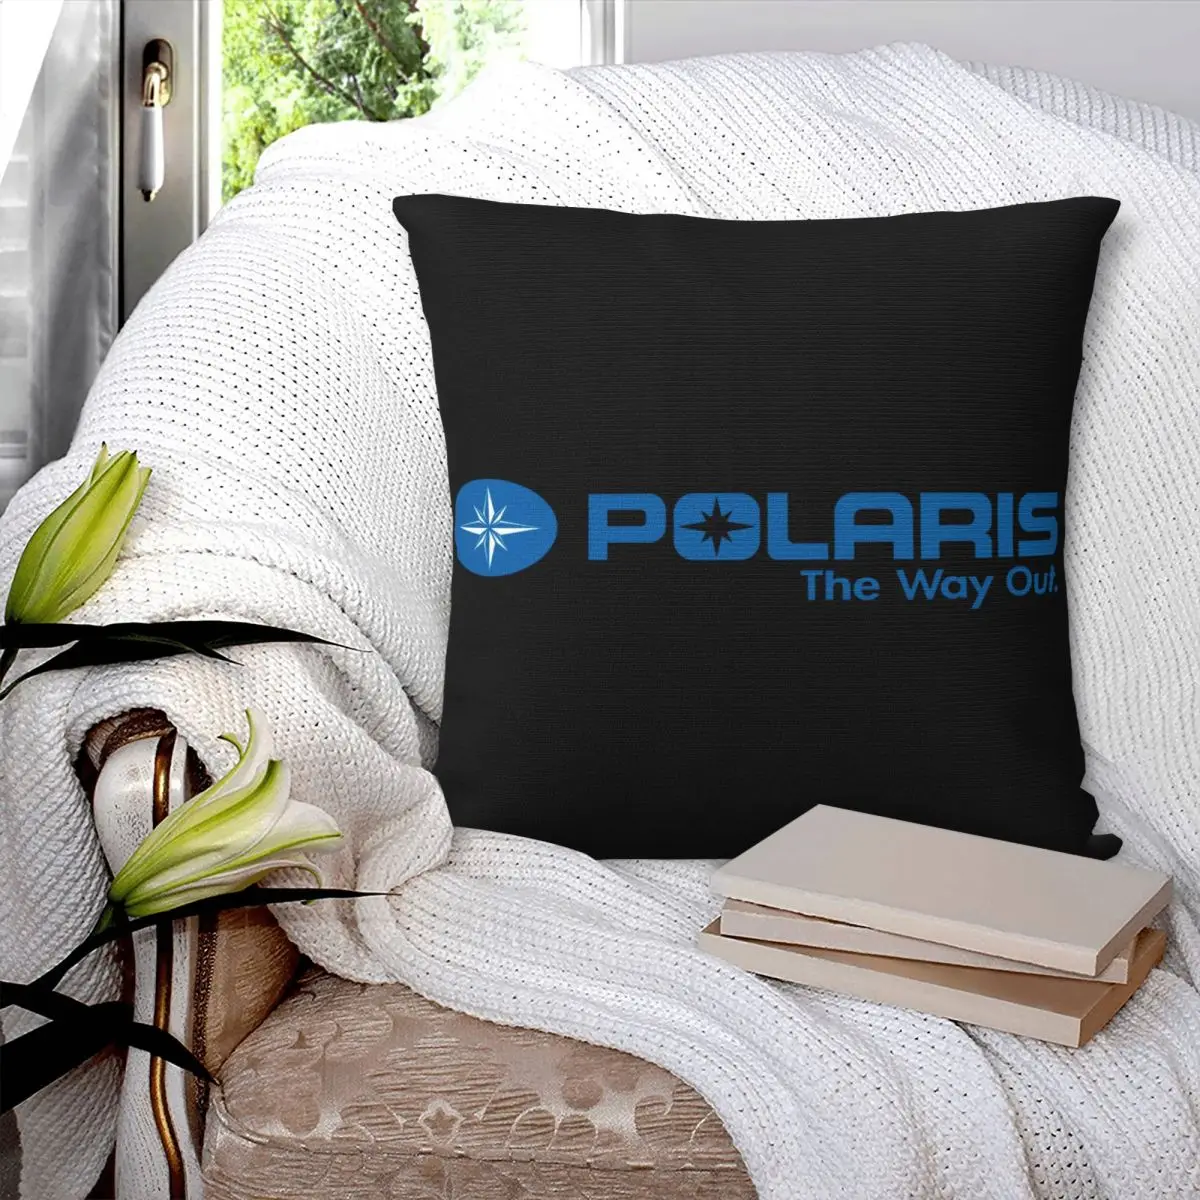 

Квадратная наволочка Polaris с логотипом (1), наволочка из полиэстера, декоративная комфортная Наволочка на молнии для дома и автомобиля